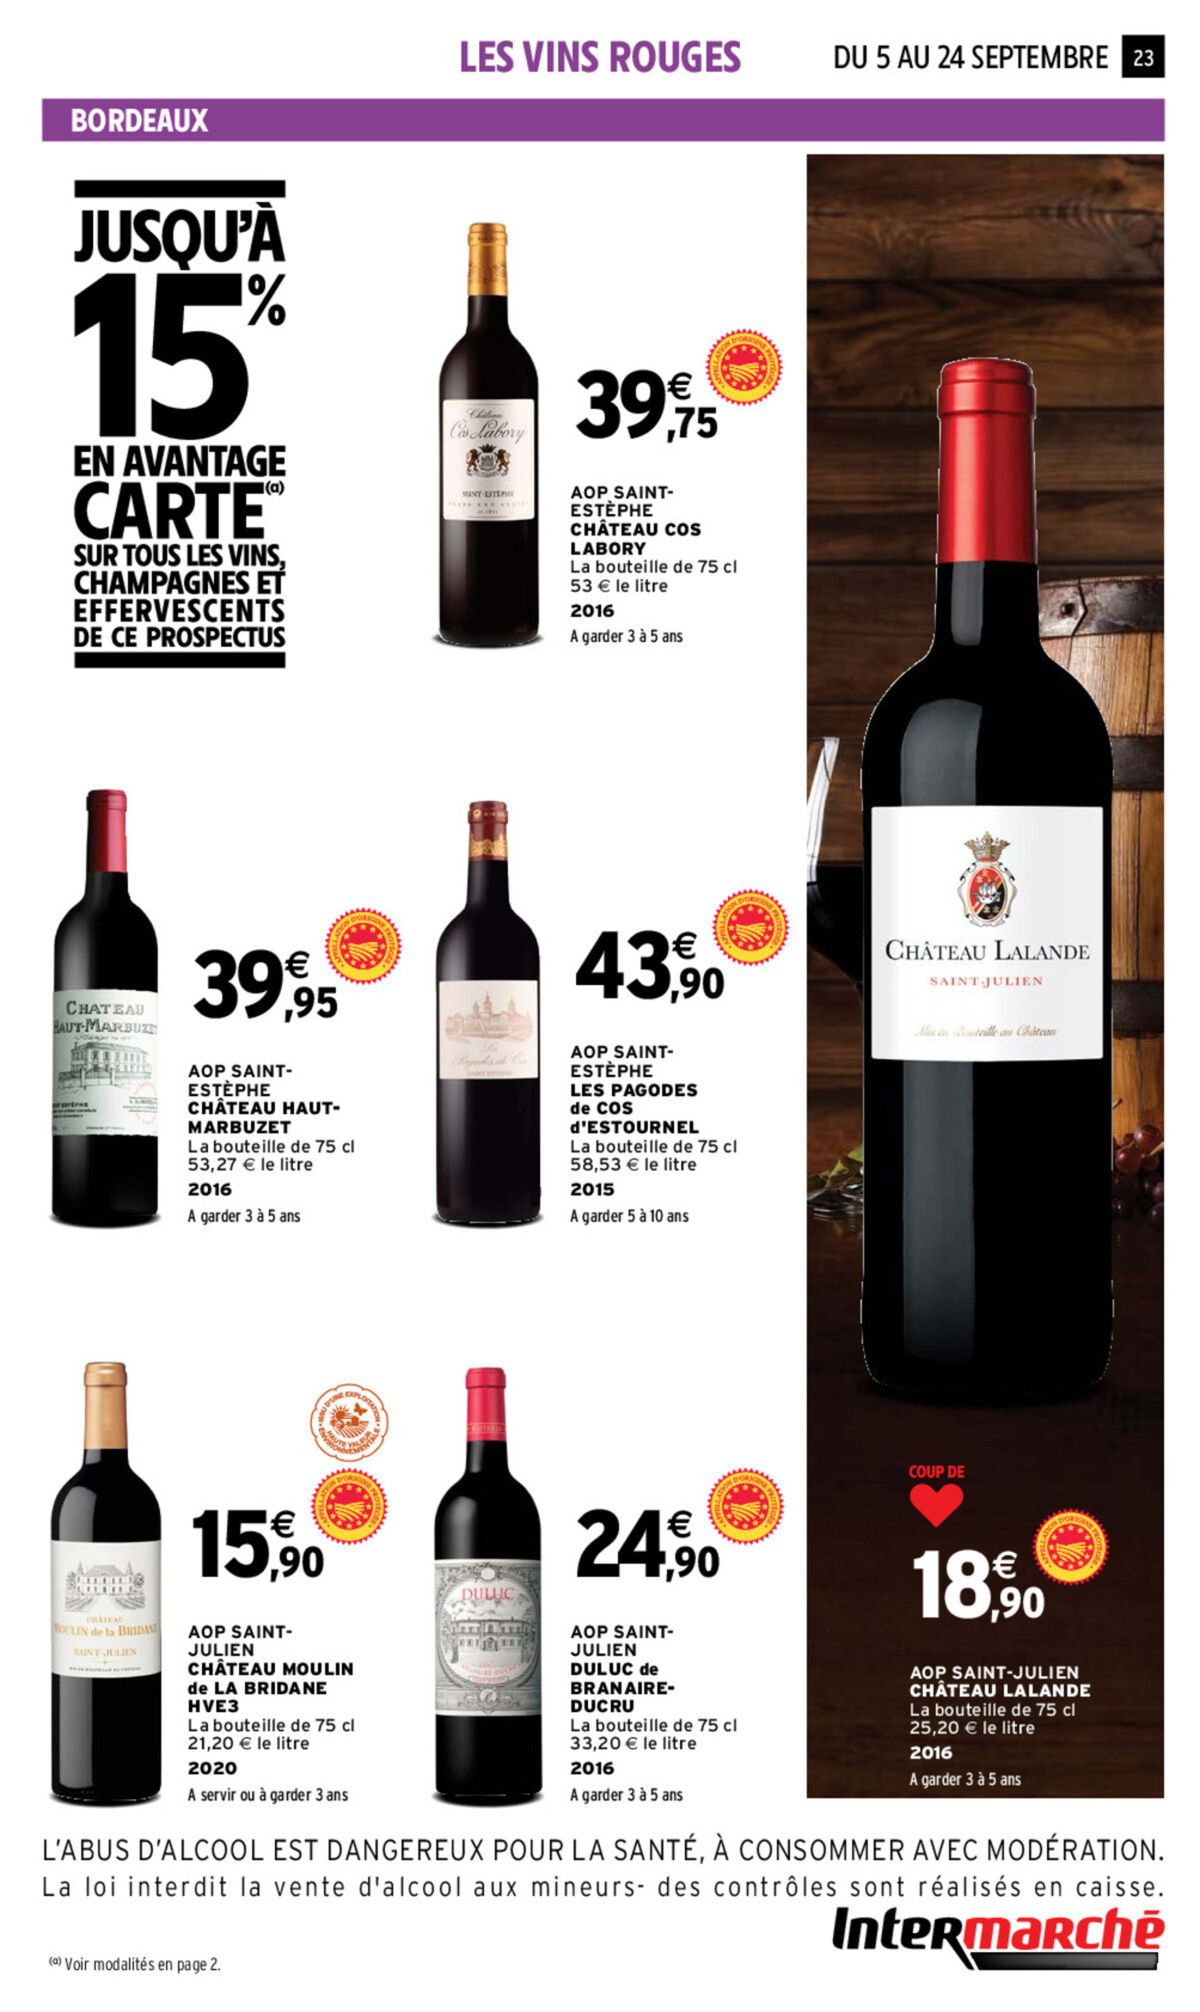 Catalogue Foire aux vins, page 00017